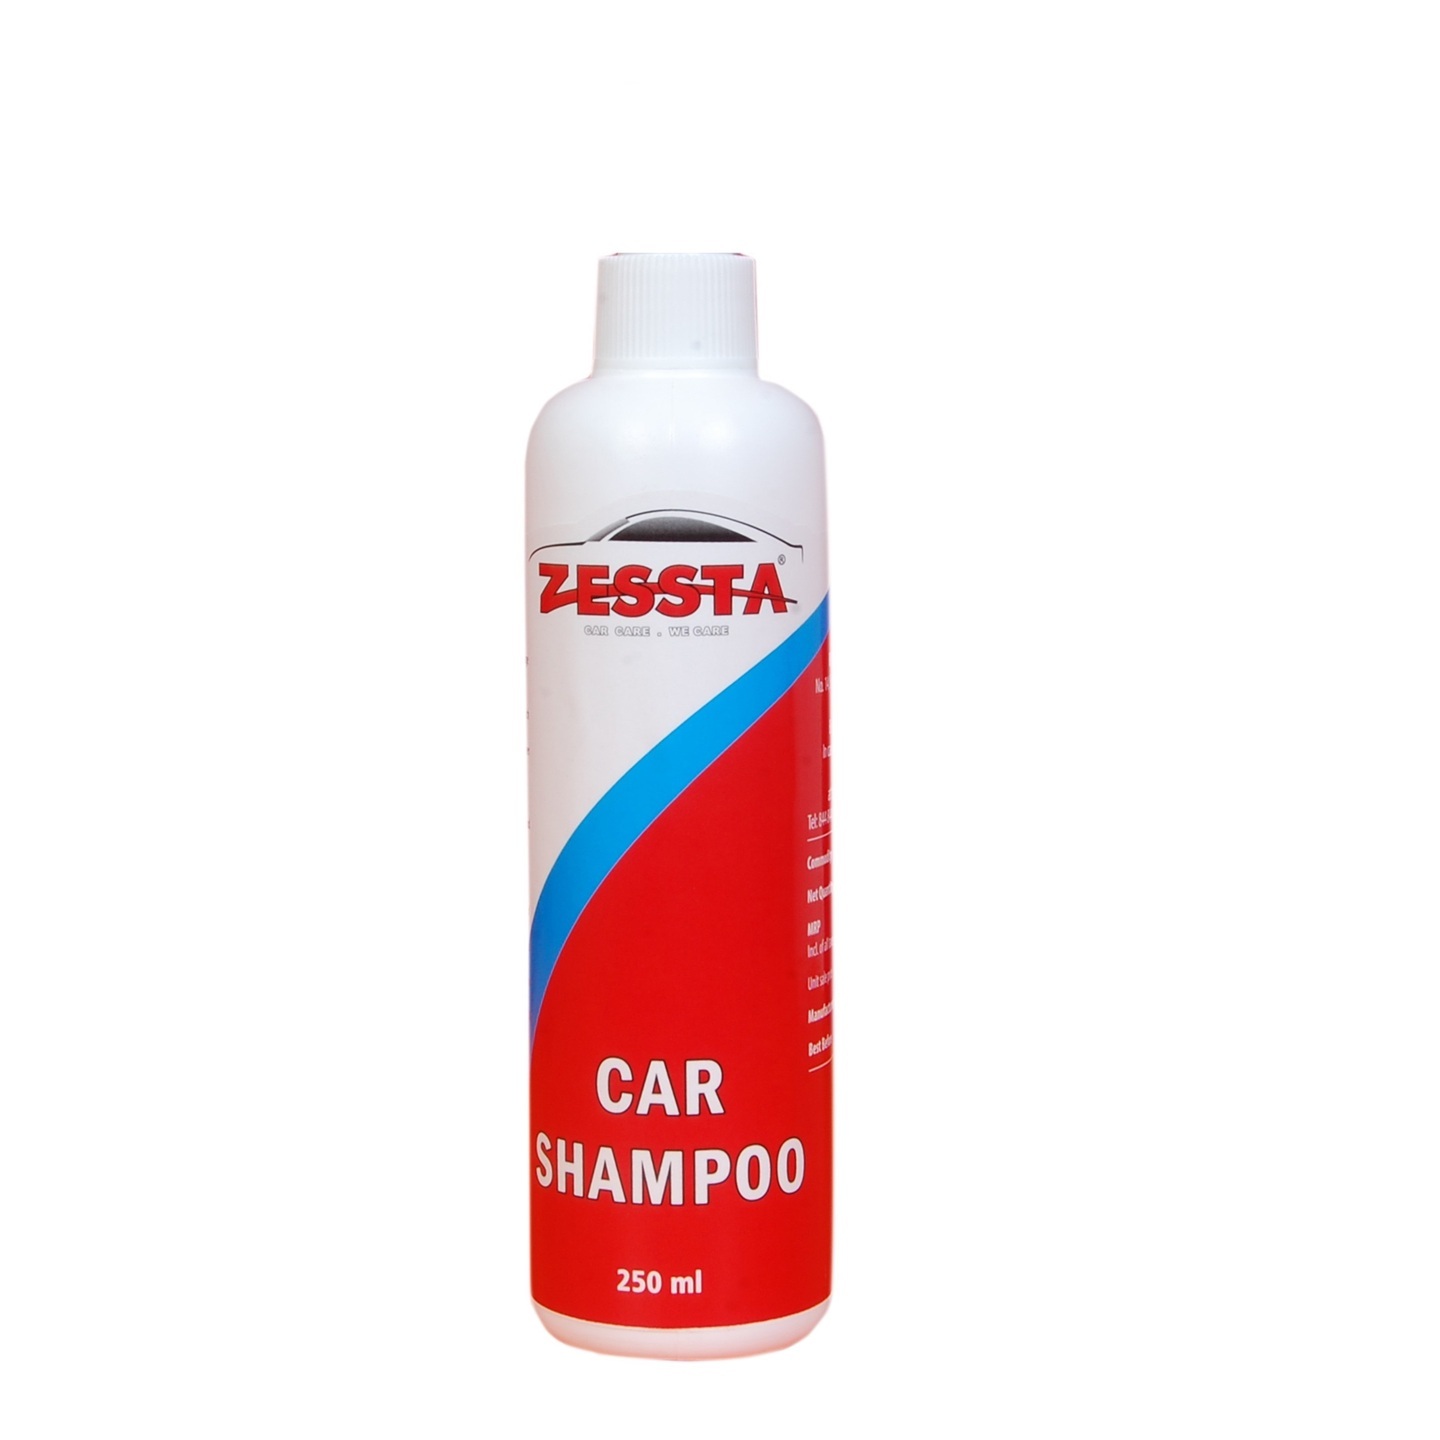 ZESSTA Car Shampoo 250 ml